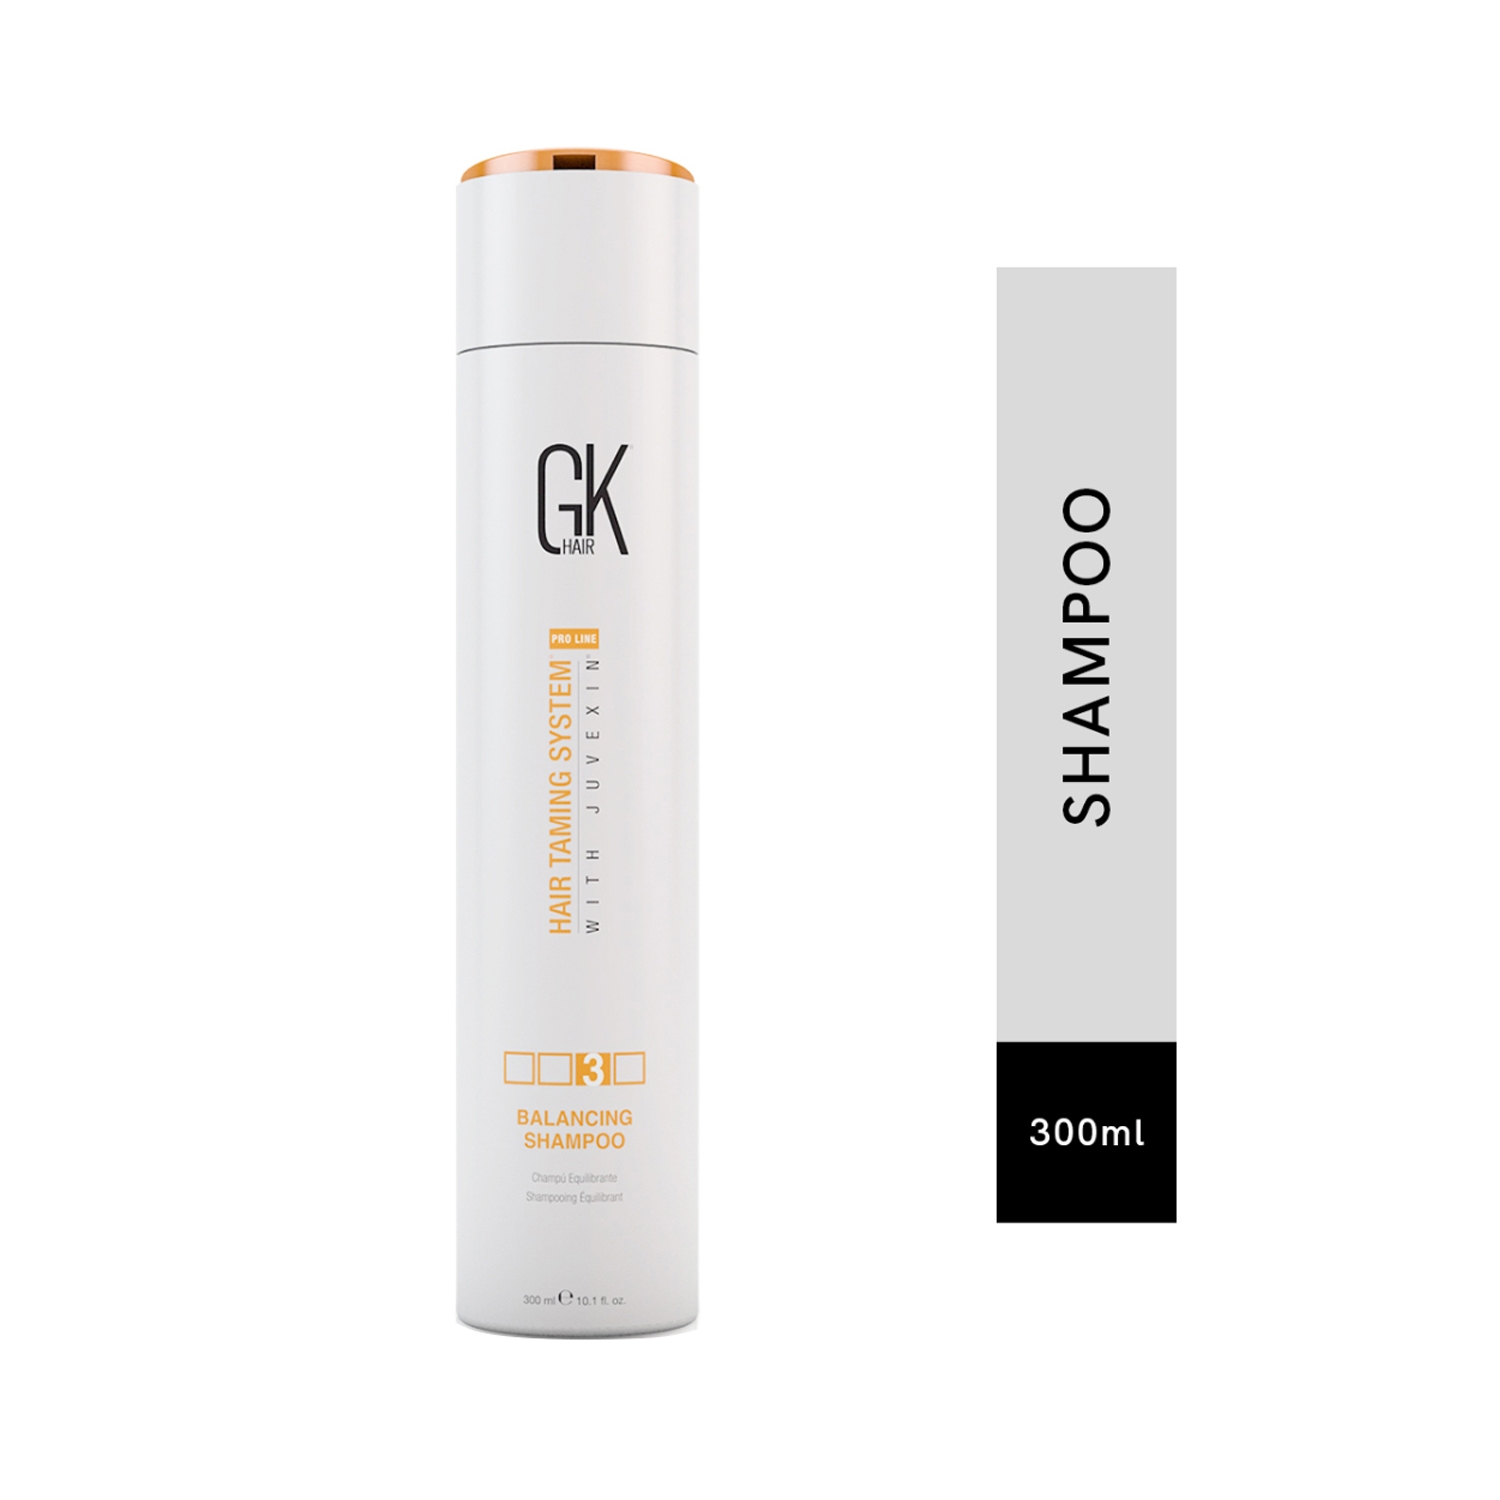 GK Hair | GK Hair Balancing Shampoo (300ml)